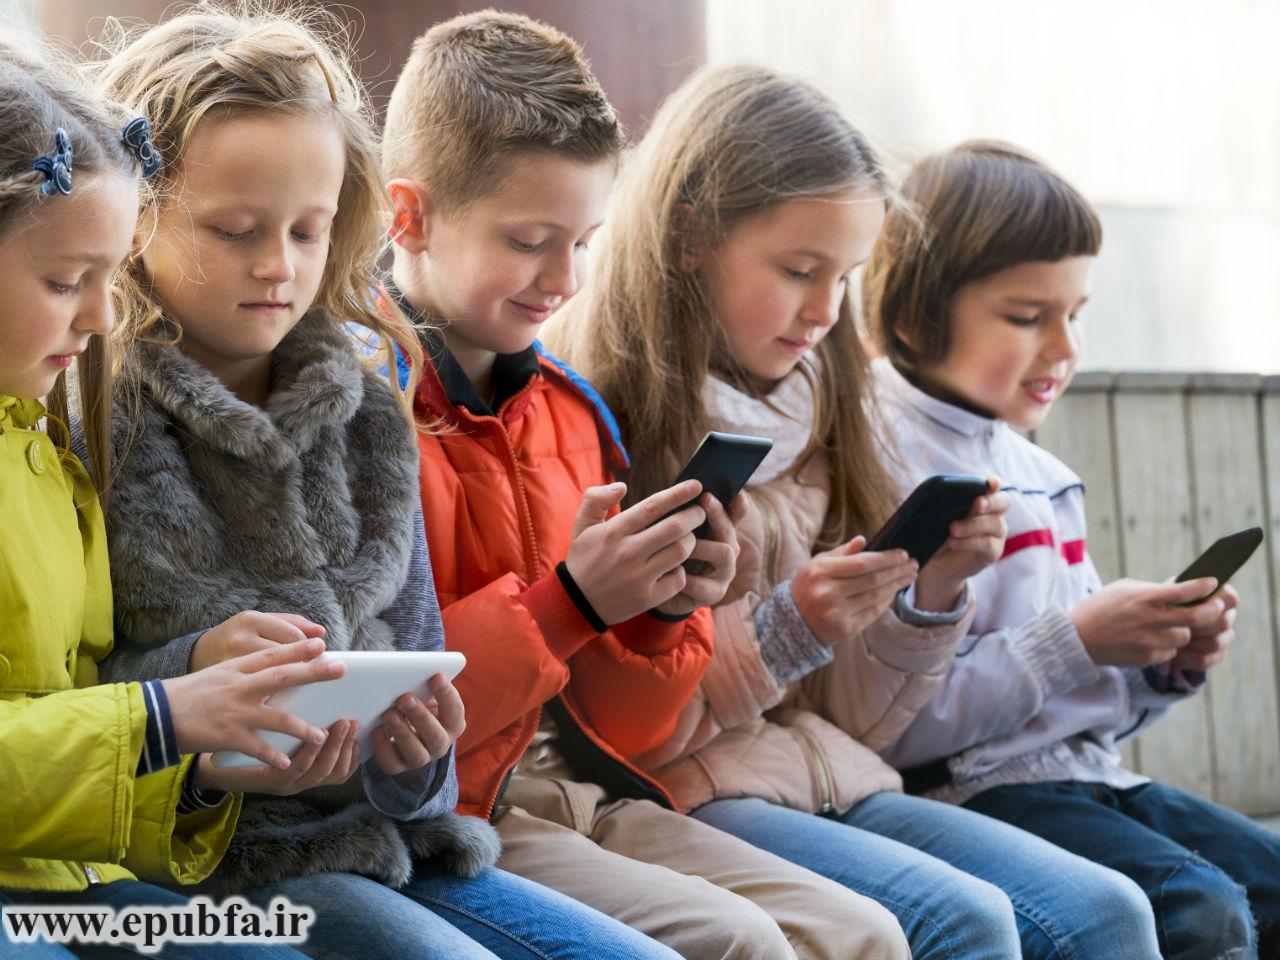 تاثیر تلفن همراه بر کودکان و نوجوانان